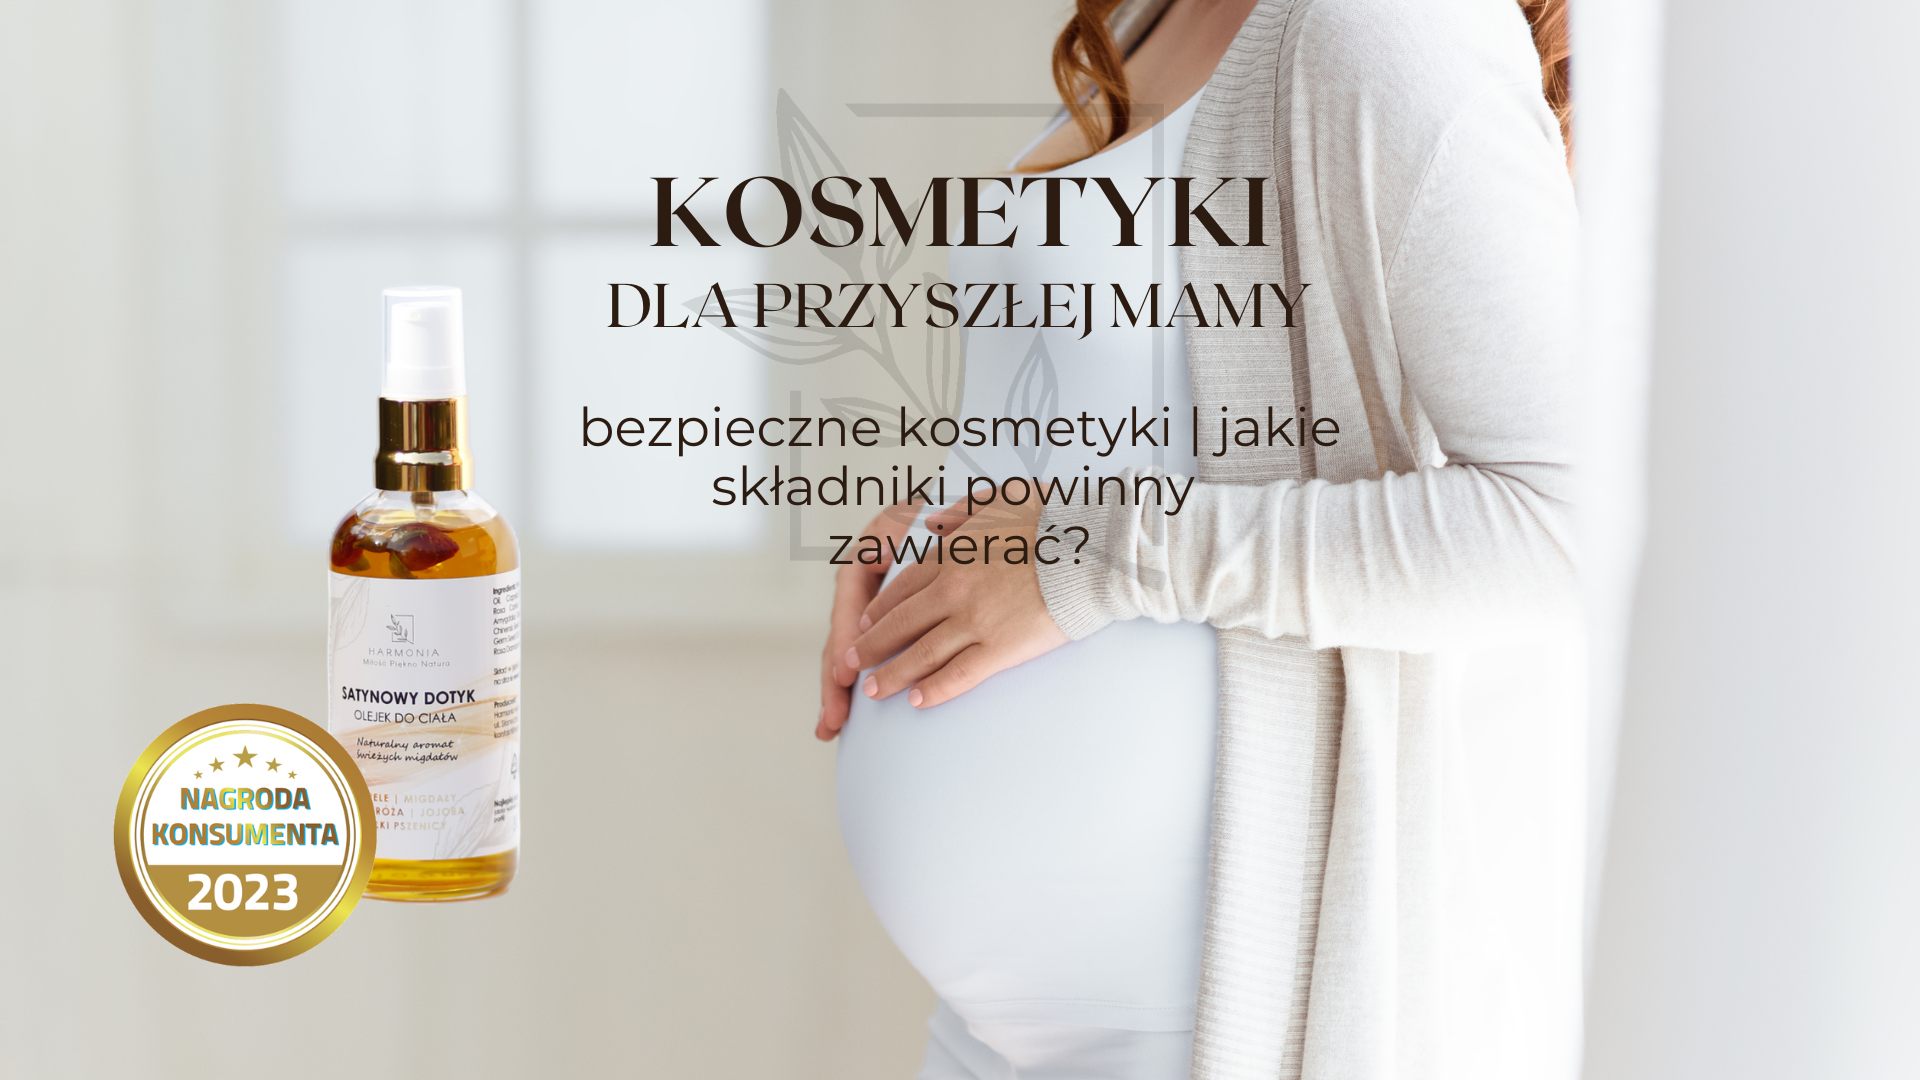 Bezpieczne kosmetyki w ciąży co mogą zawierać oraz jakich kosmetyków nie używać w ciąży